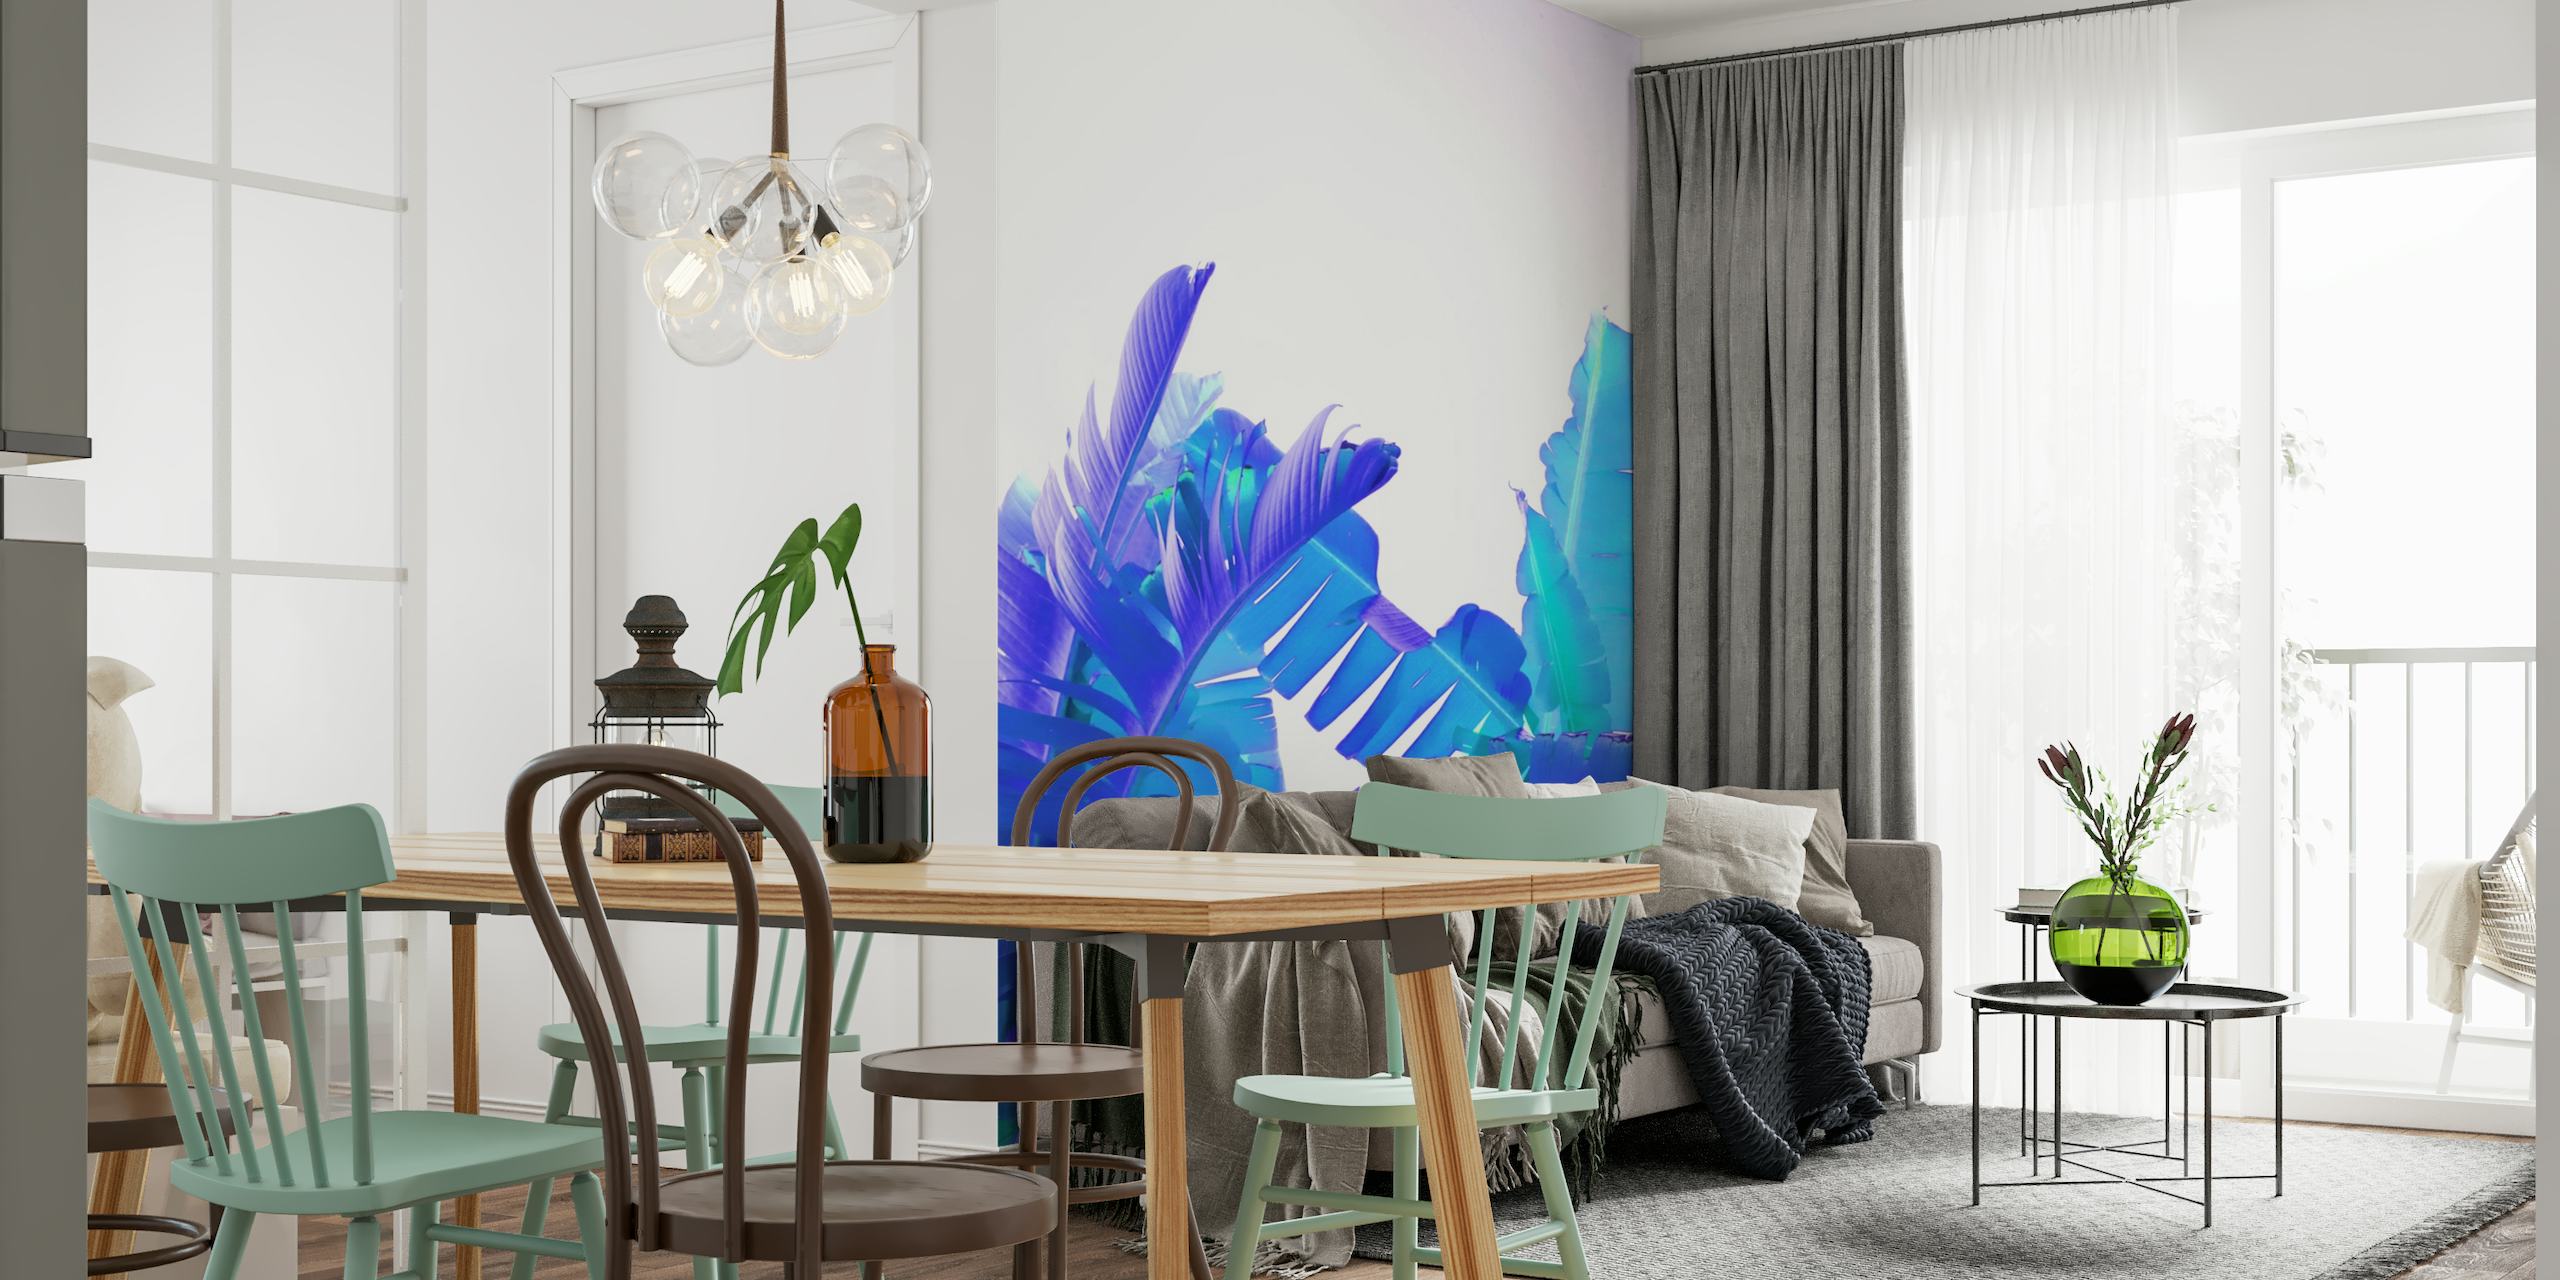 Blauwgekleurde bananenbladeren muurschildering voor een tropisch decor